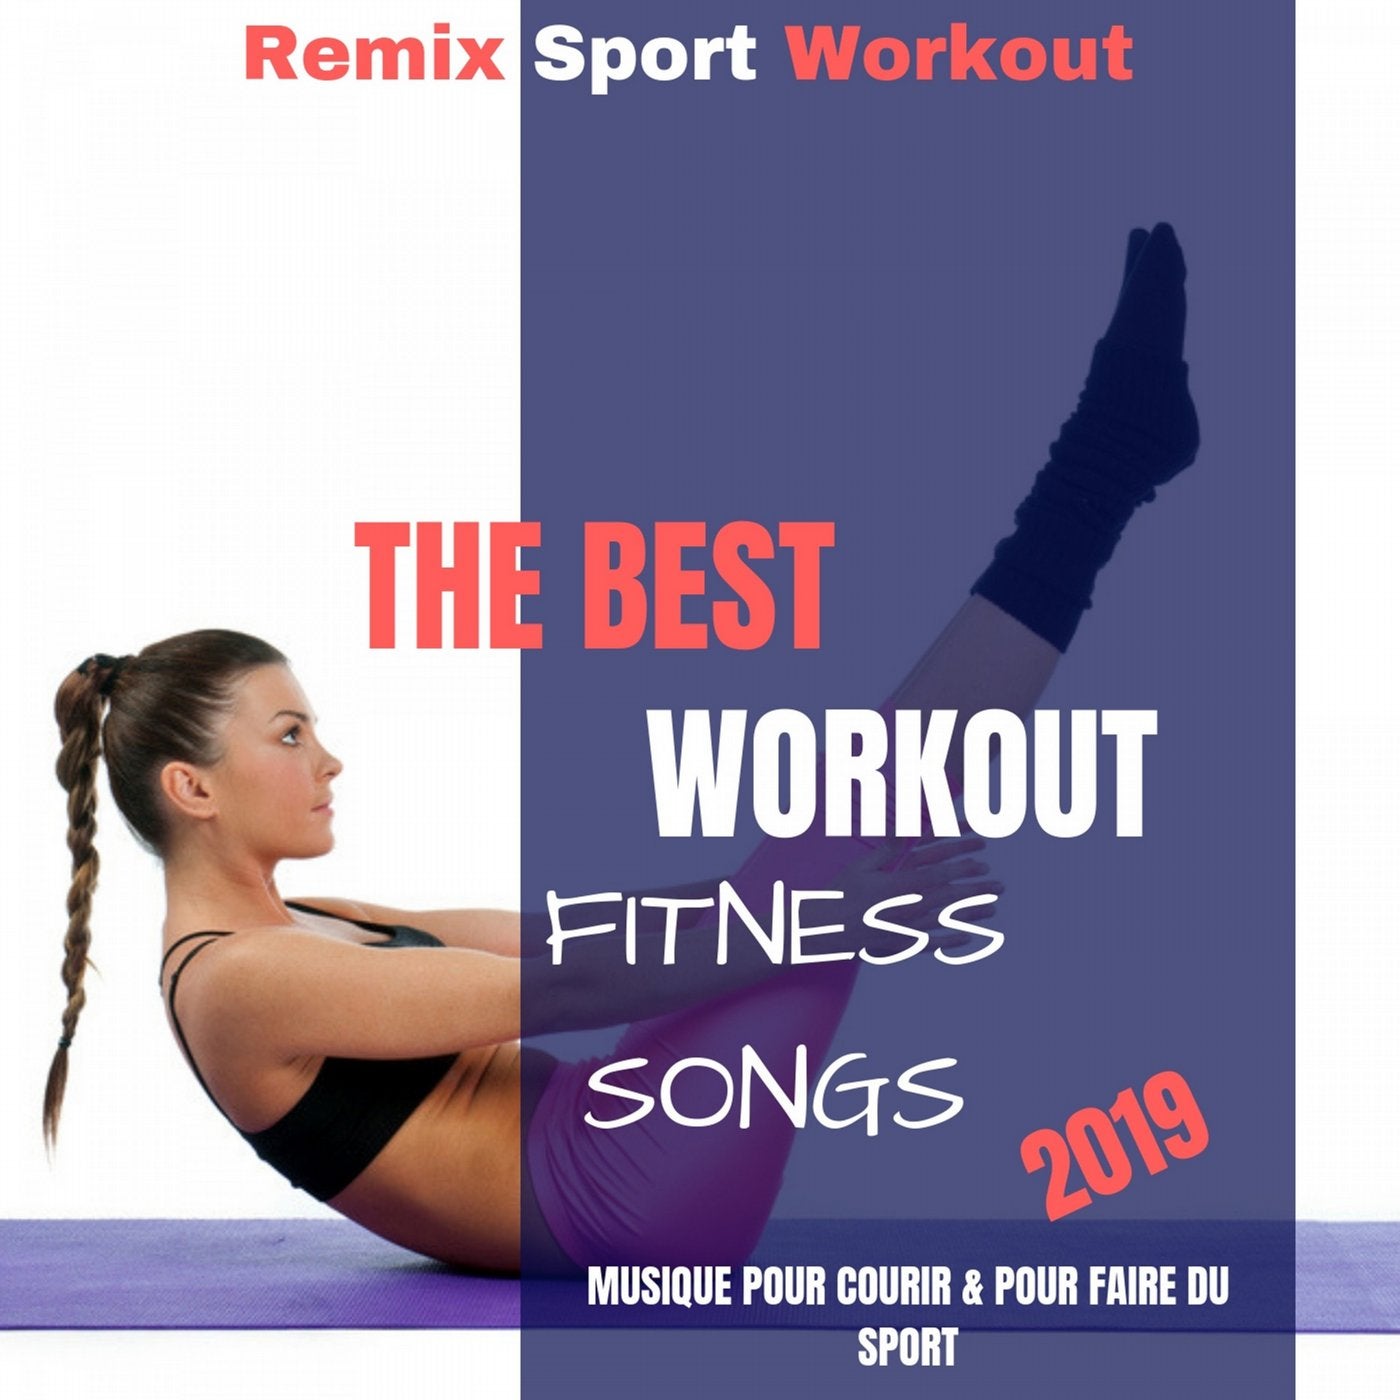 The Best Workout Fitness Songs 2019 (Musique Pour Courir & Pour Faire Du Sport)